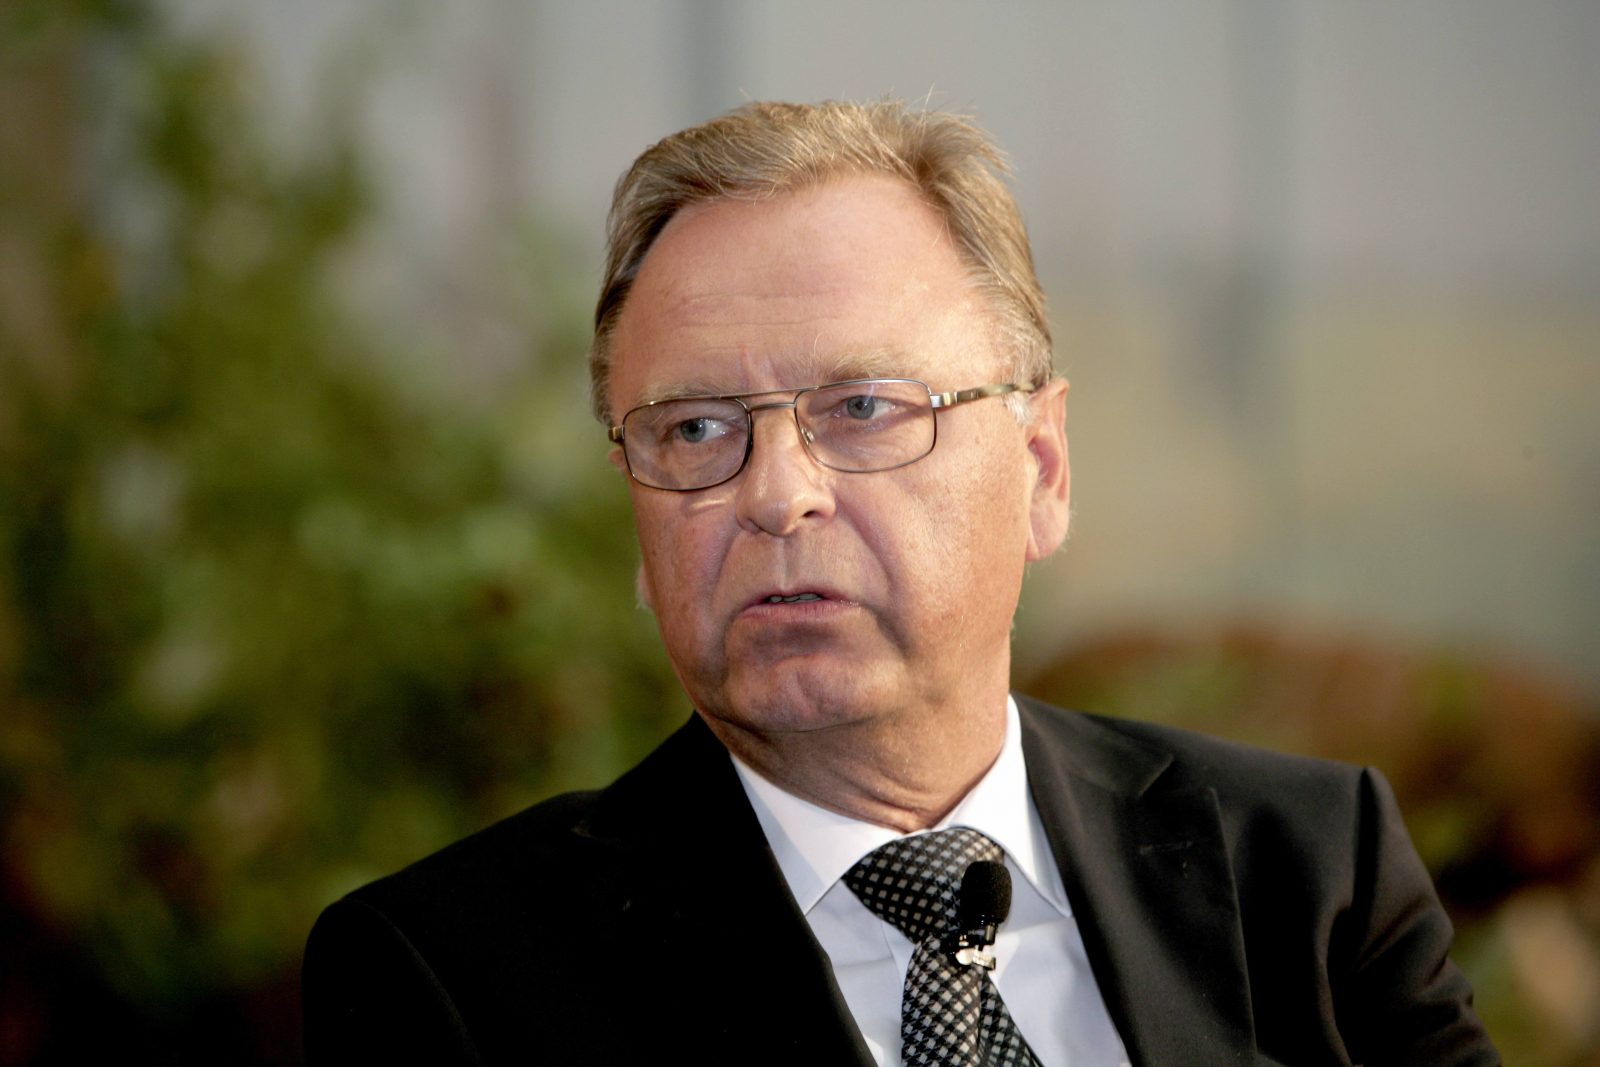 Hans-Jürgen Papier